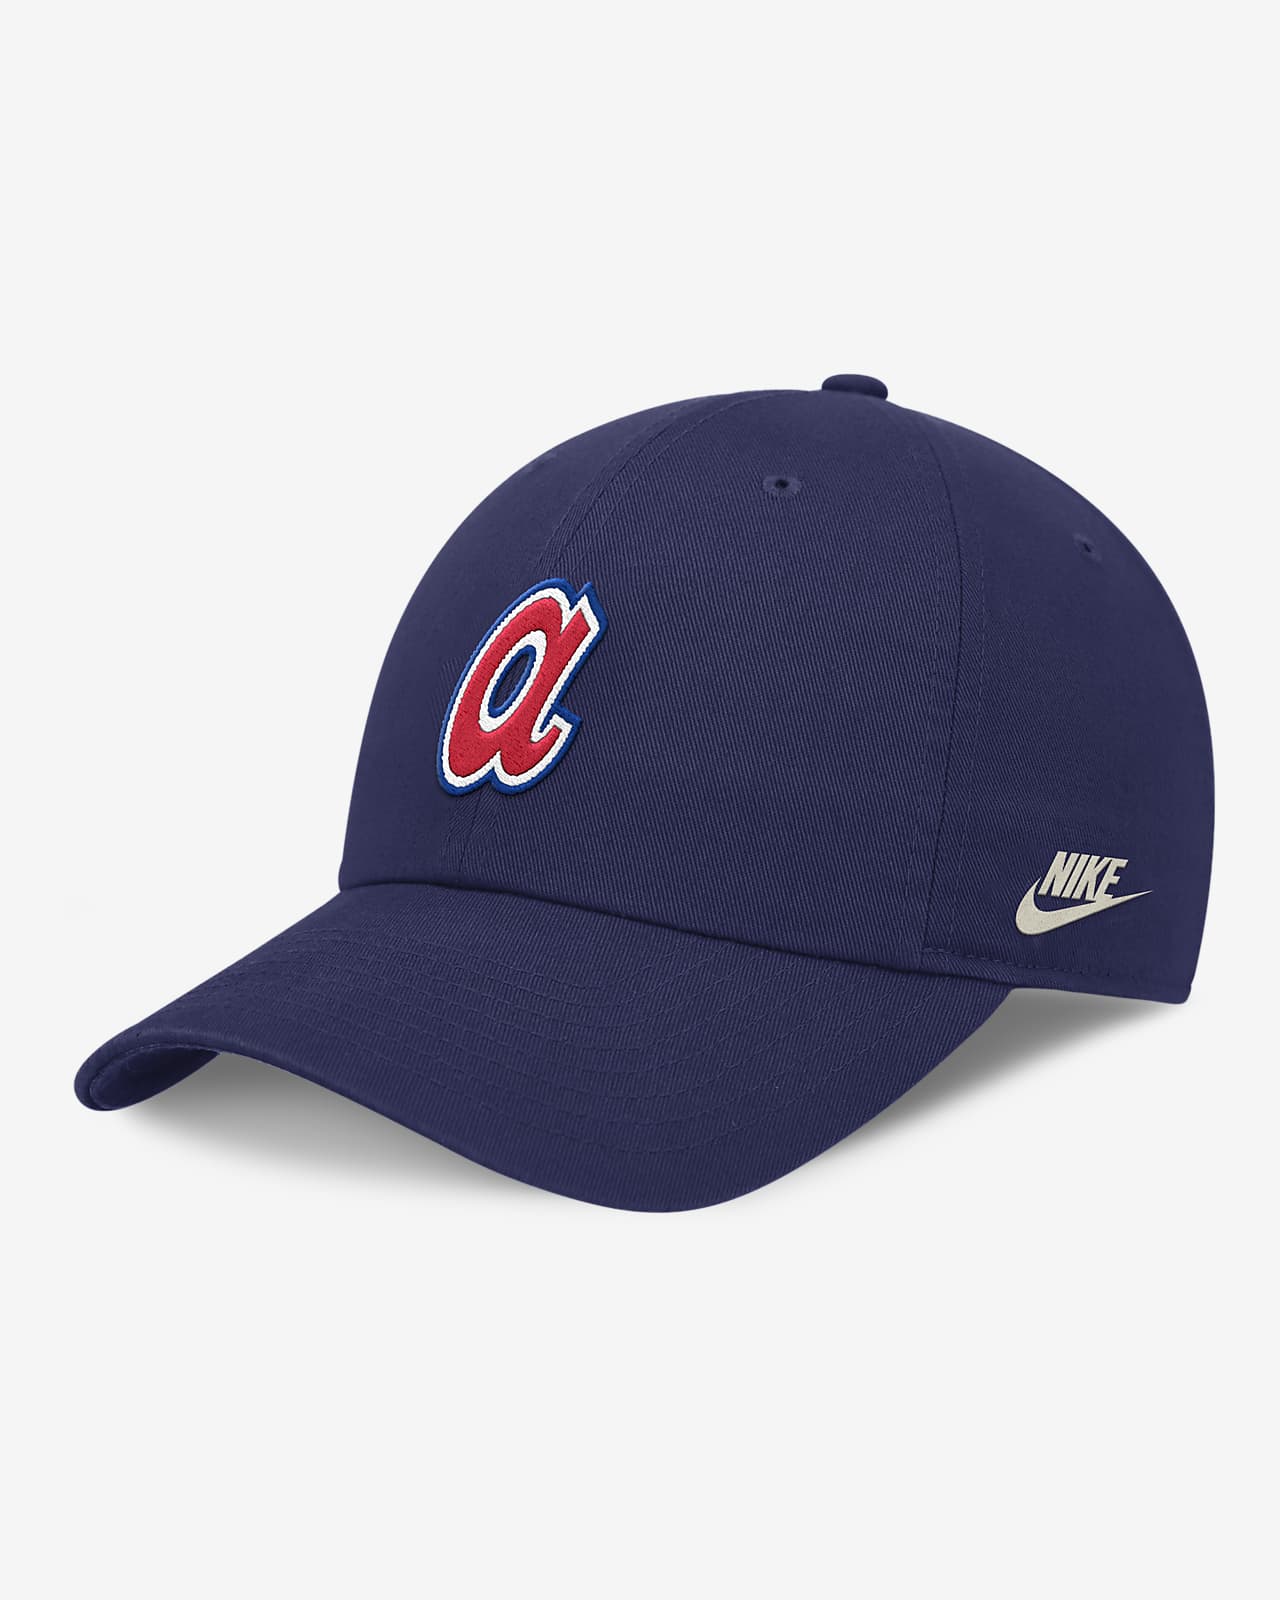 Atlanta Braves Rewind Cooperstown Club Men's Nike MLB Adjustable Hat